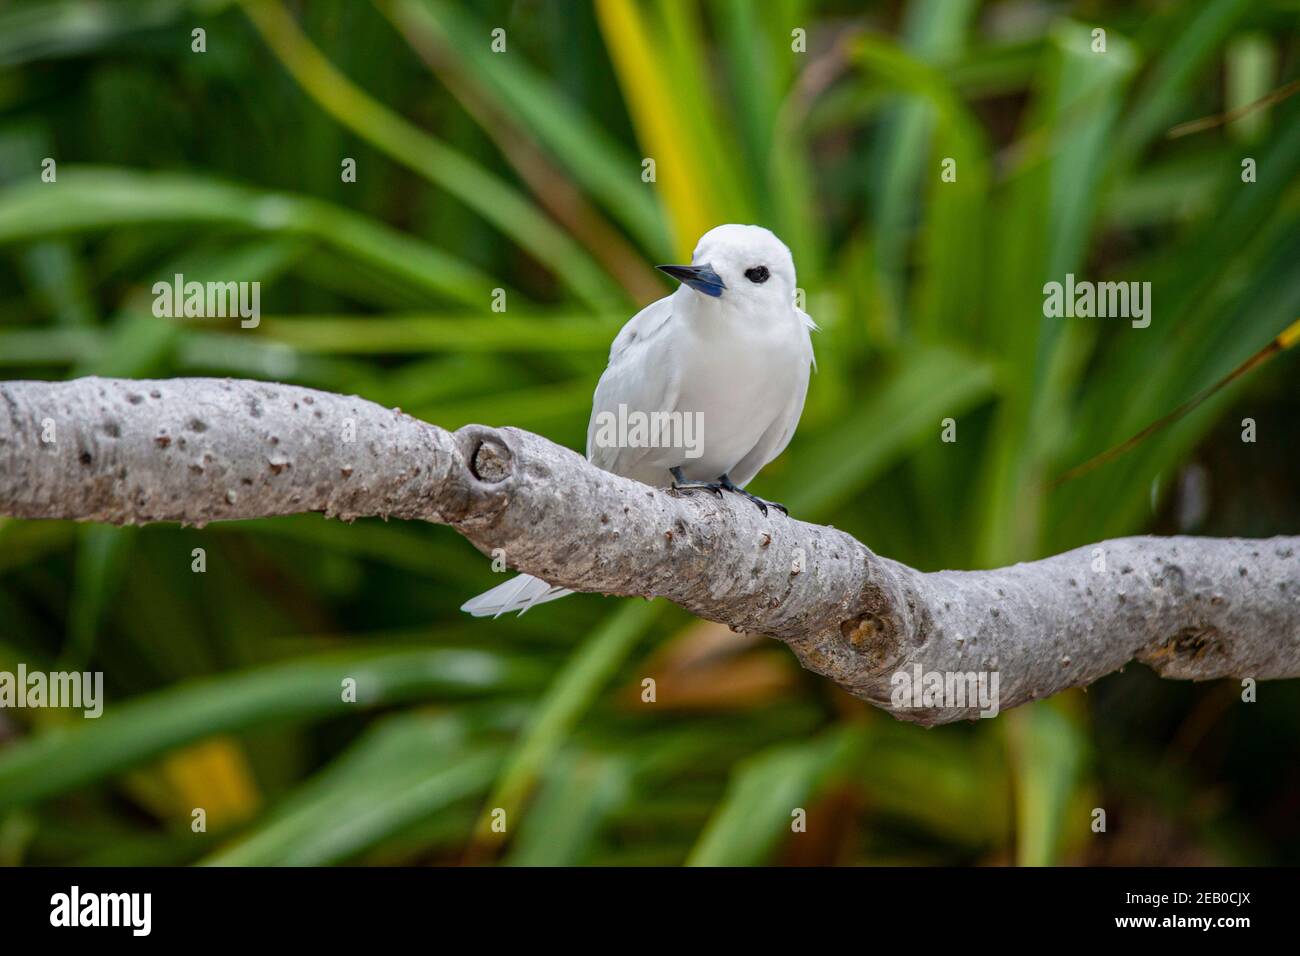 Una terna bianca, aka terna fata o noddy bianco, siede su un ramo, isola di Palmerston, Pacifico del Sud. Foto Stock